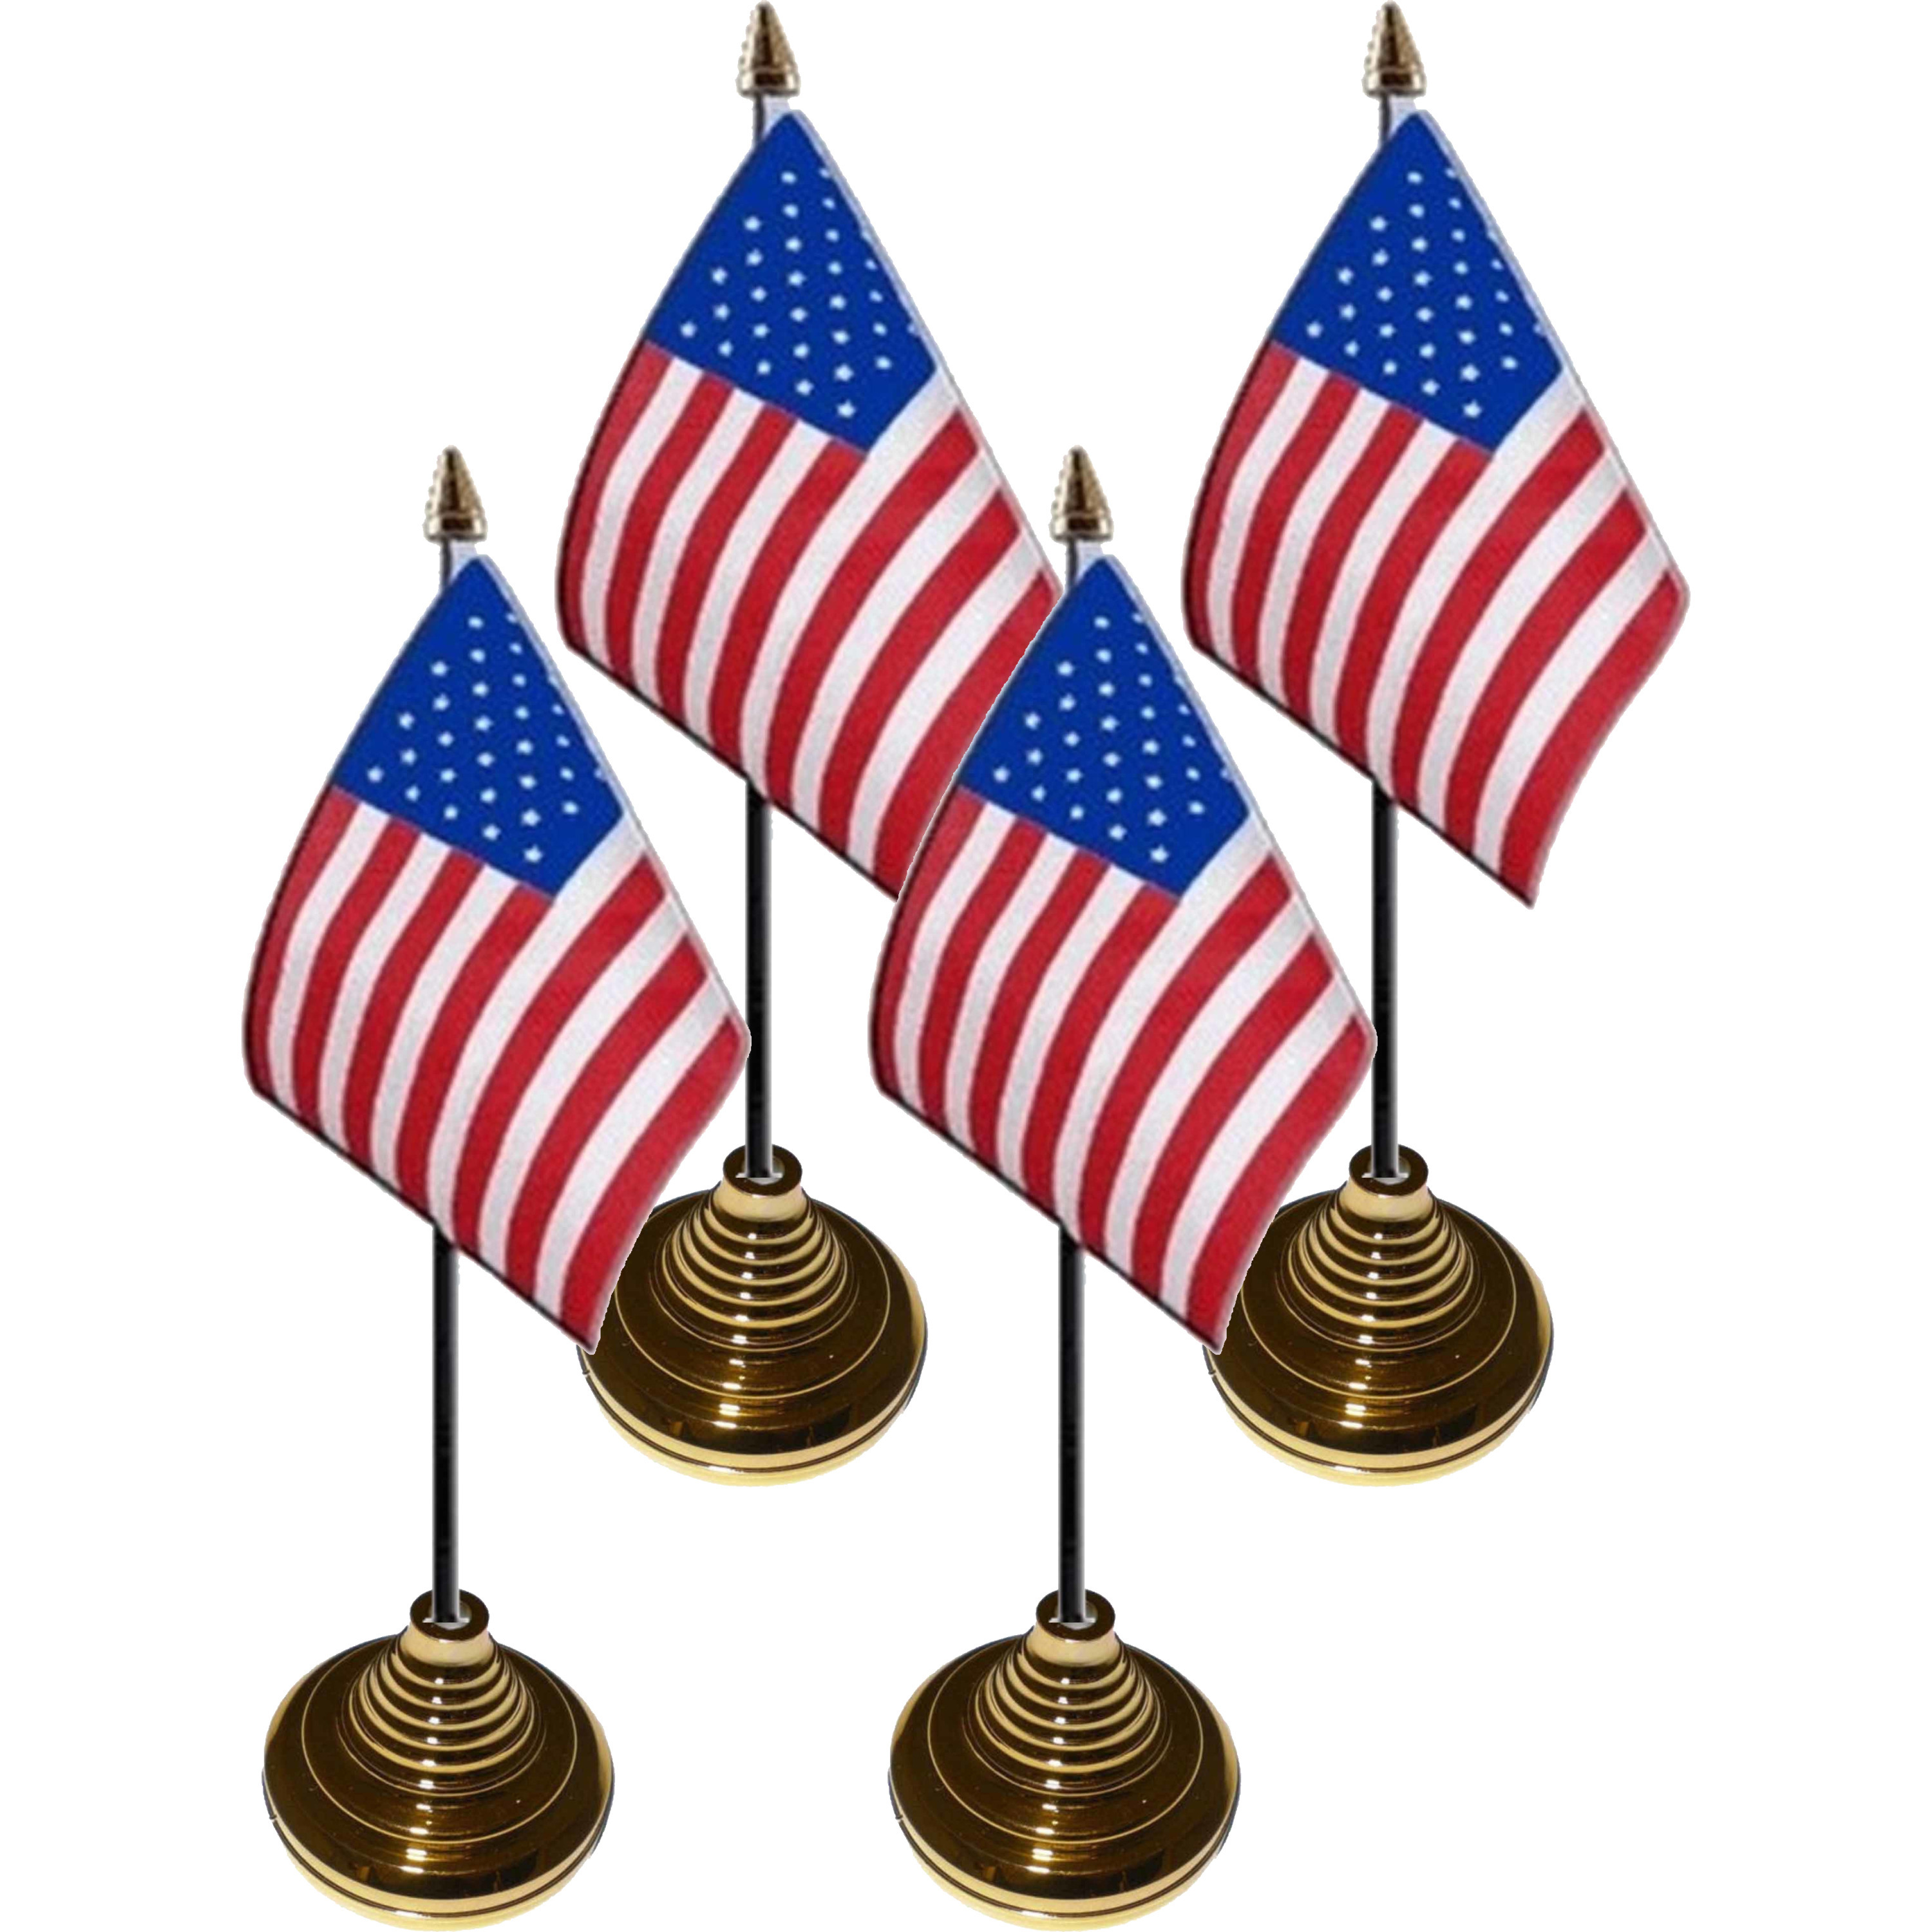 4x stuks Tafelvlaggetjes USA-Amerika op voet van 10 x 15 cm